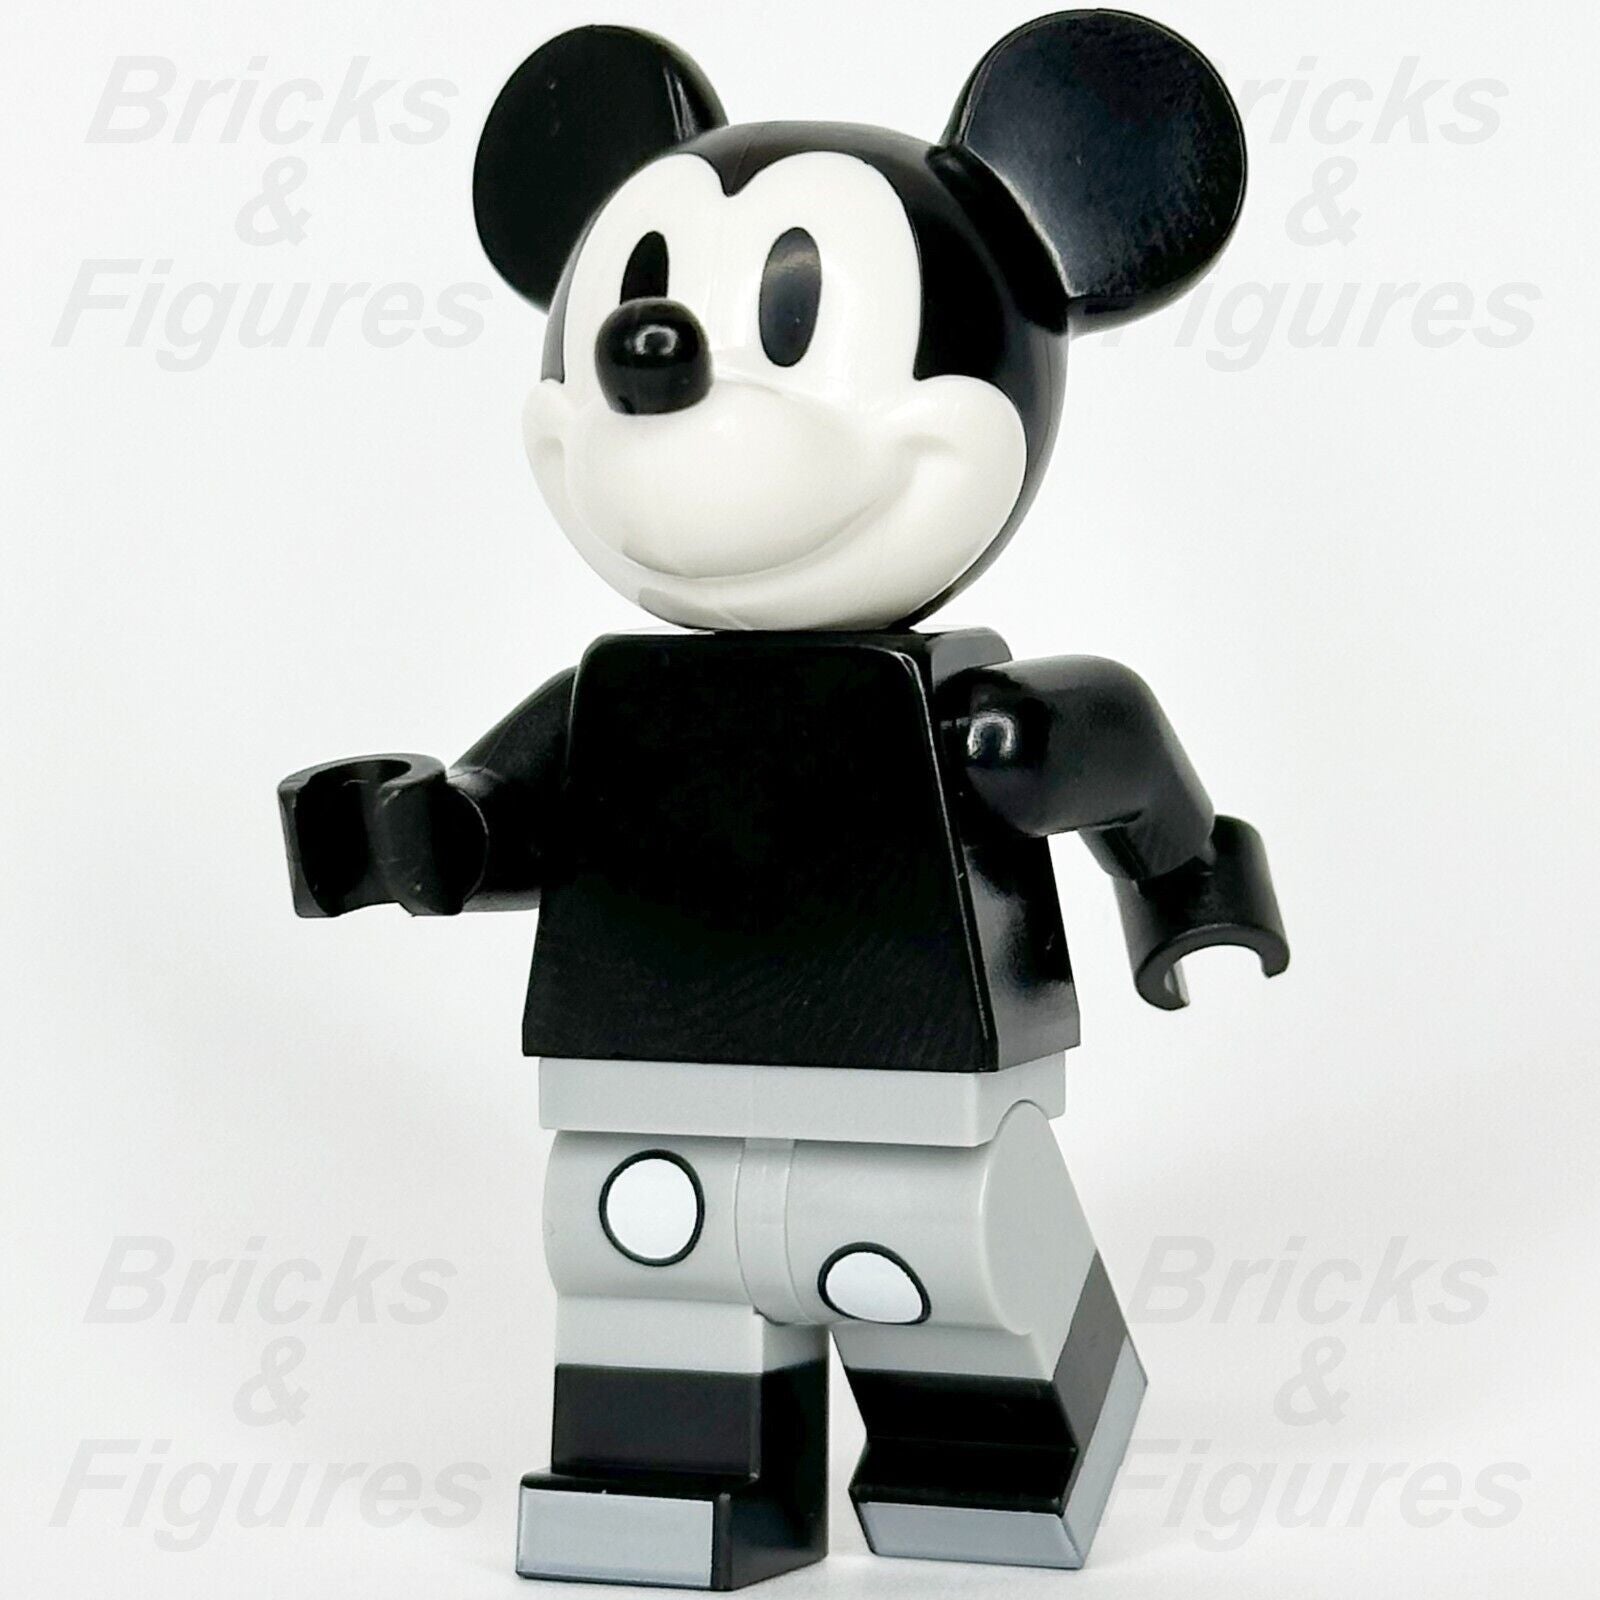 LEGO Disney Mickey Mouse Minifigure Vintage Black & White Classic 43230 dis142